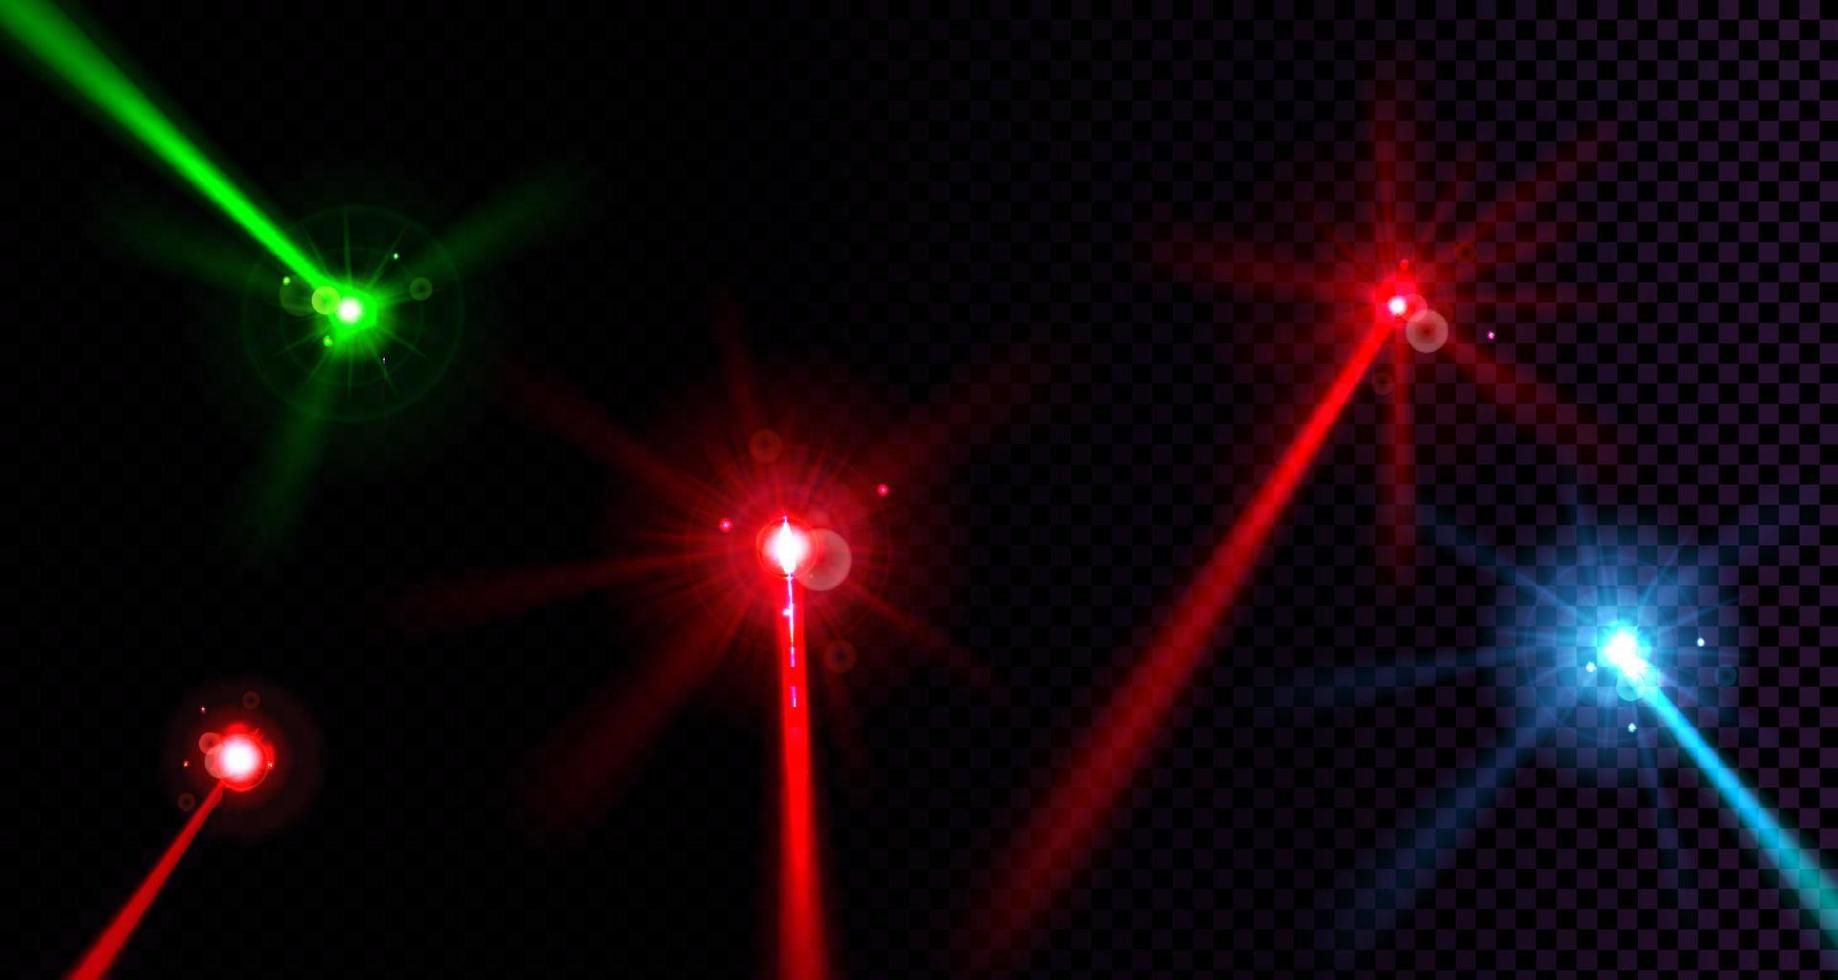 feixes de laser vermelho, verde e azul com efeito de brilho vetor